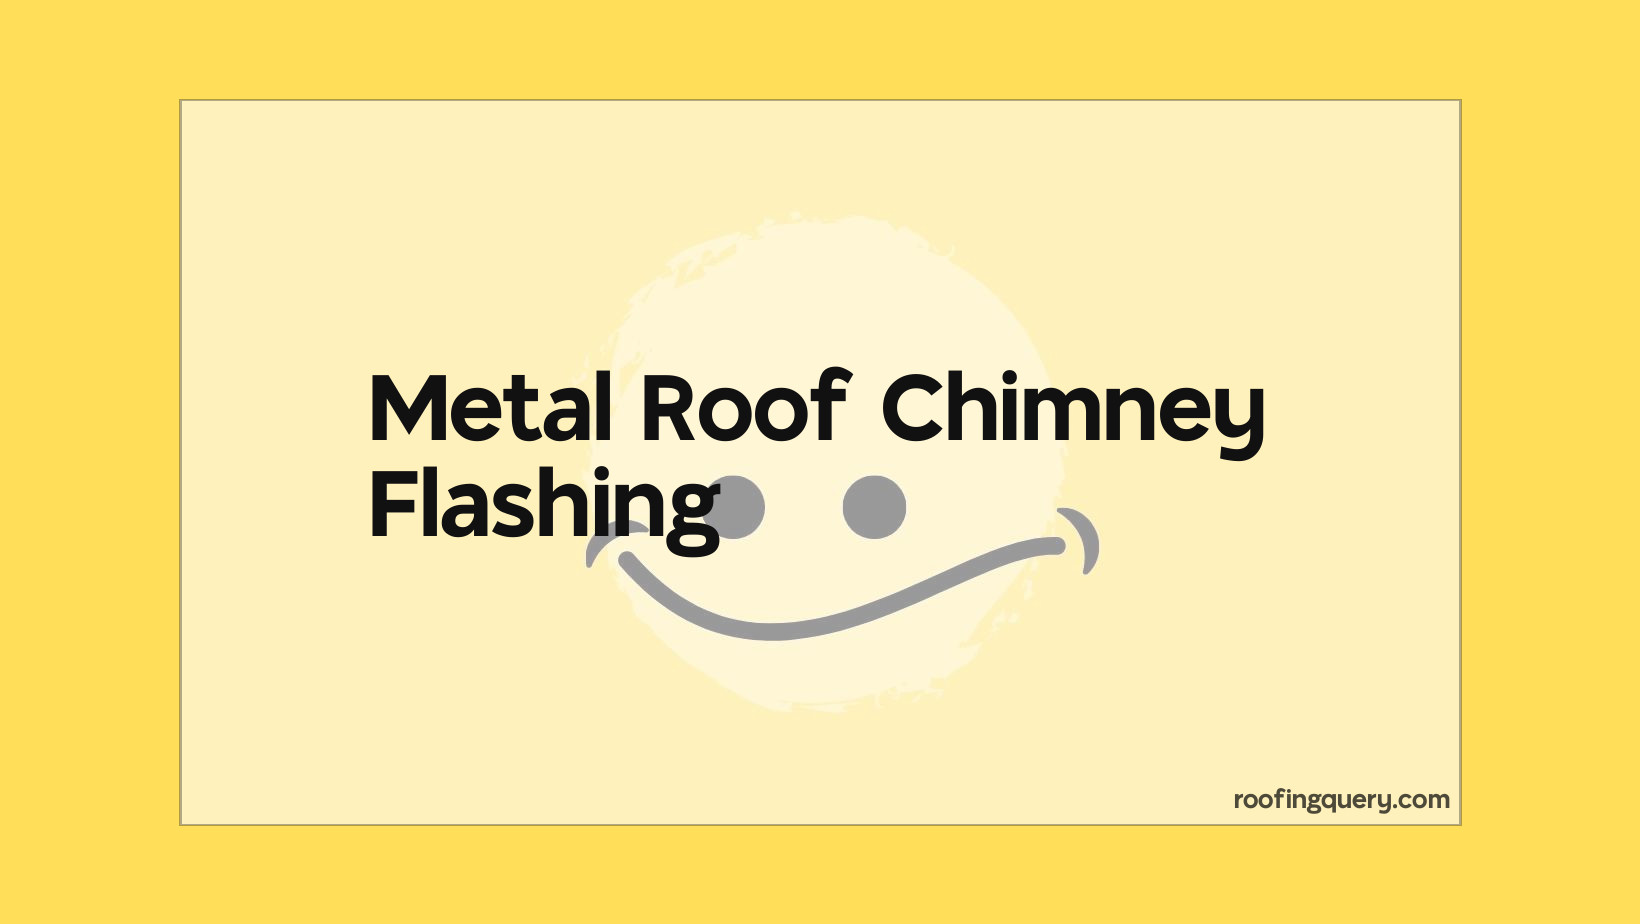 Metal Roof Chimney Flashing